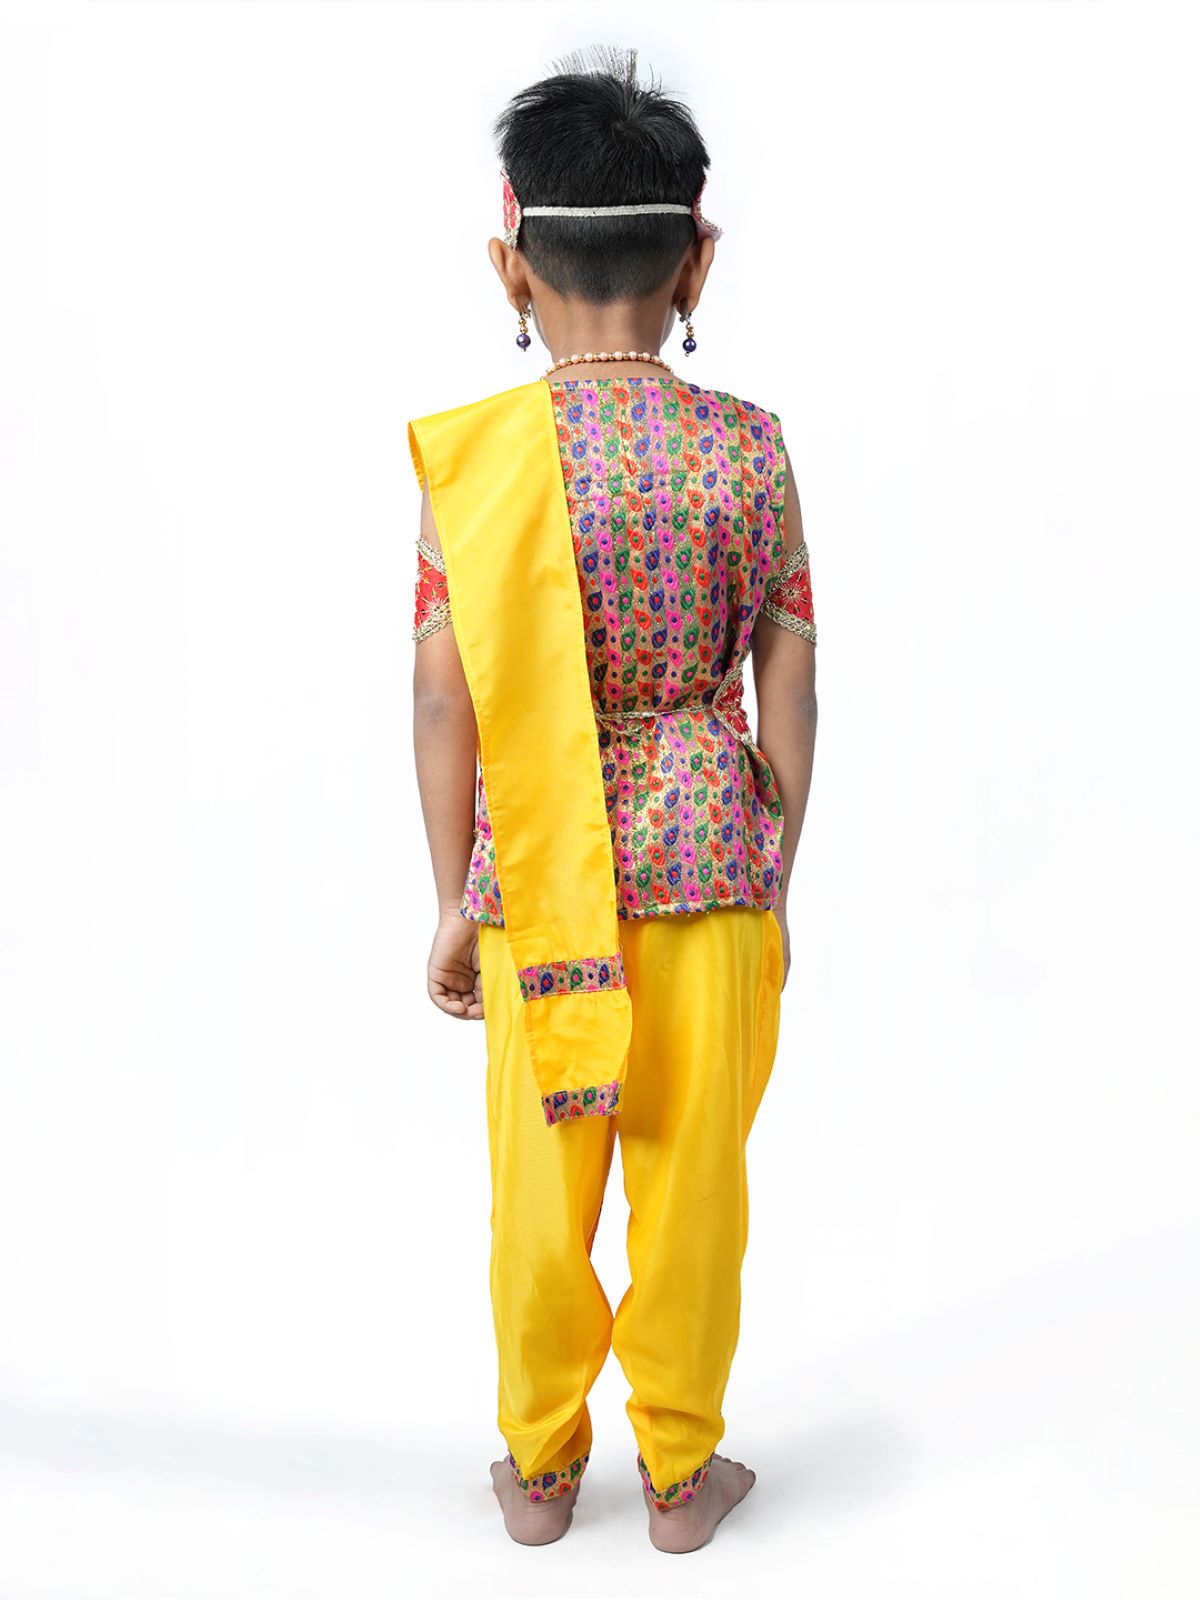 Morges Janmashtami Shri Krishna Printed Laddu Gopal Dress Costume For Kids  (Size 16) : Amazon.in: Home & Kitchen